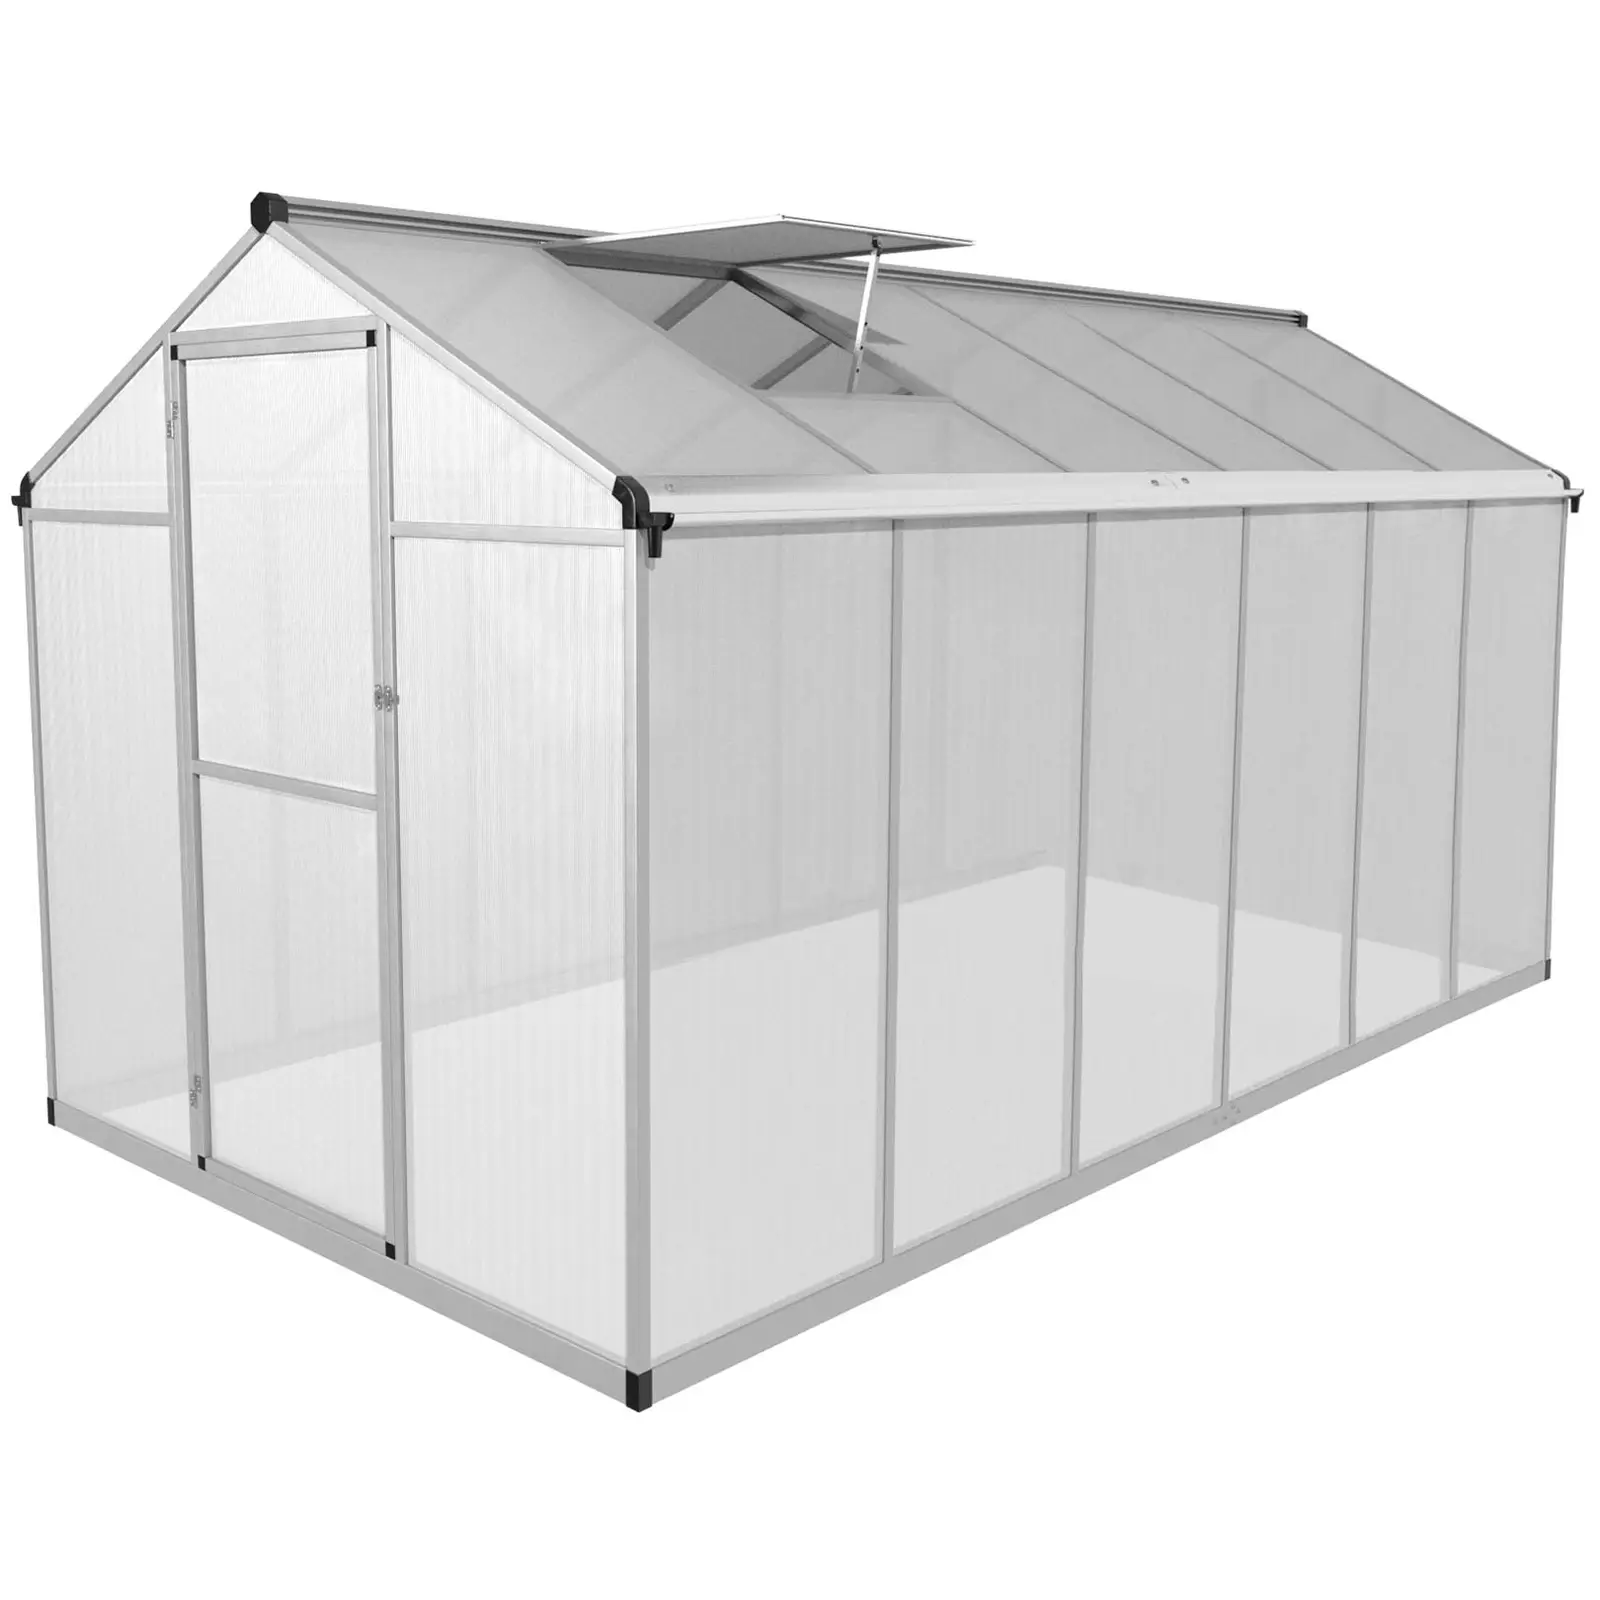 Greenhouse - 360 x 180 x 195 cm - polycarbonate + aluminium